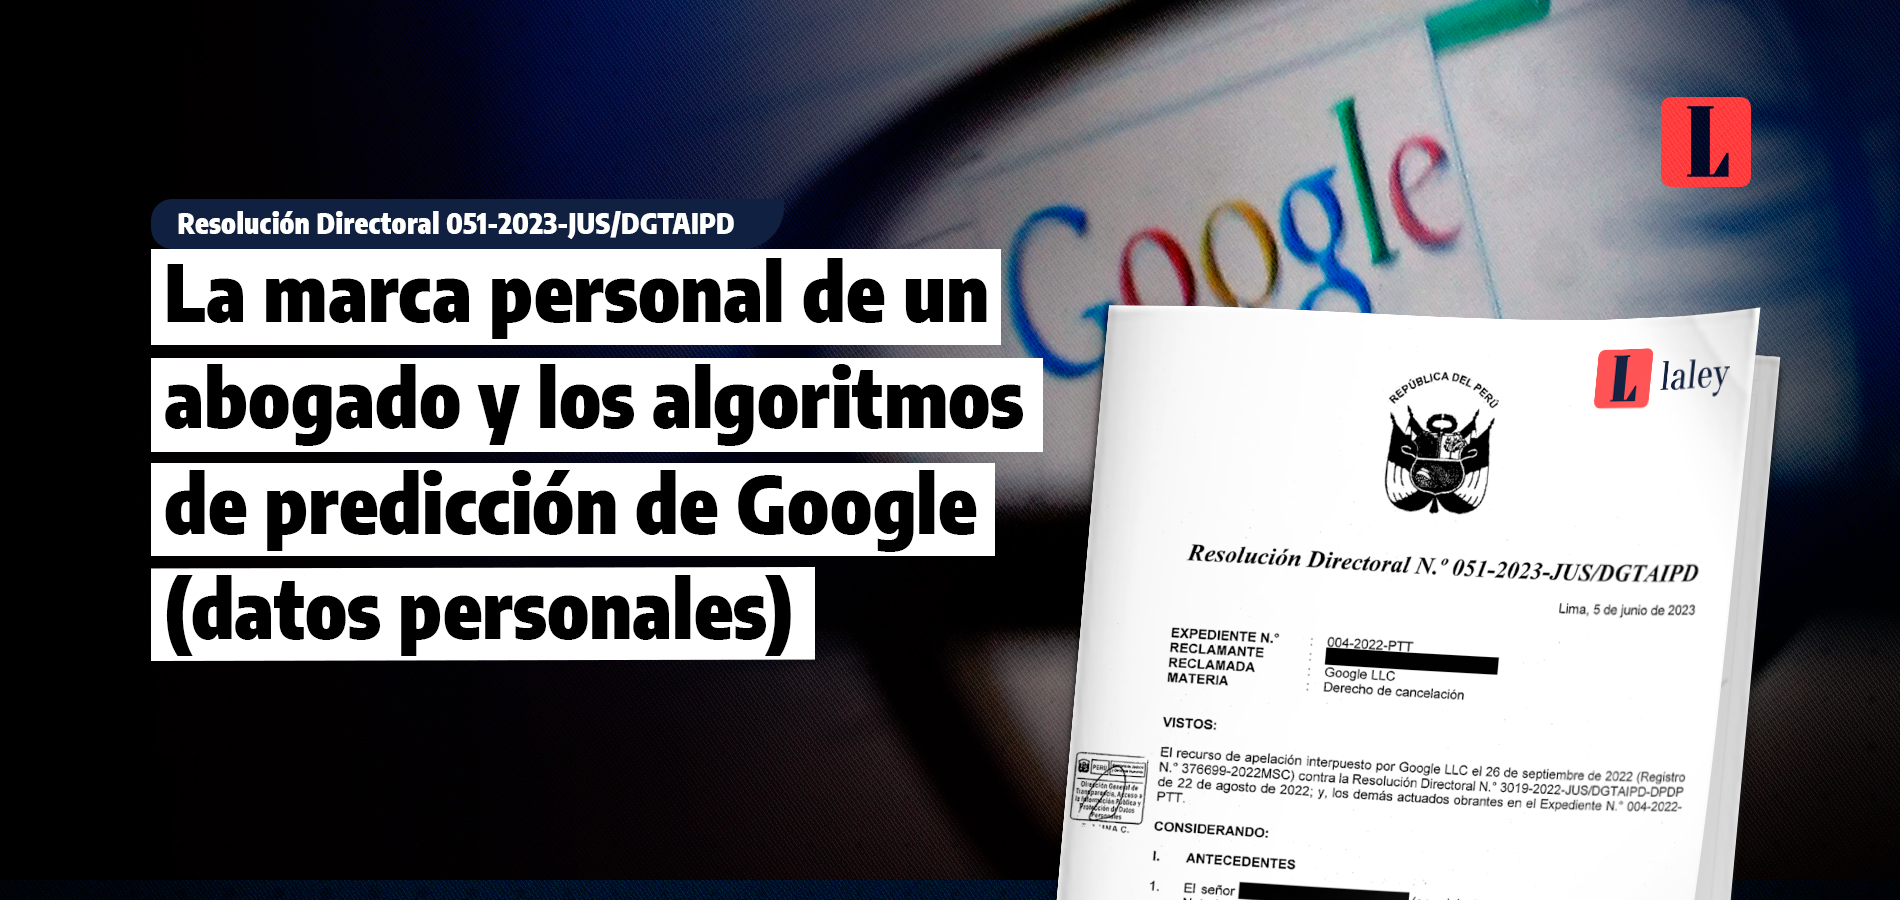 Datos personales: seis argumentos sobre predicción de algoritmos de Google y la marca personal de un abogado